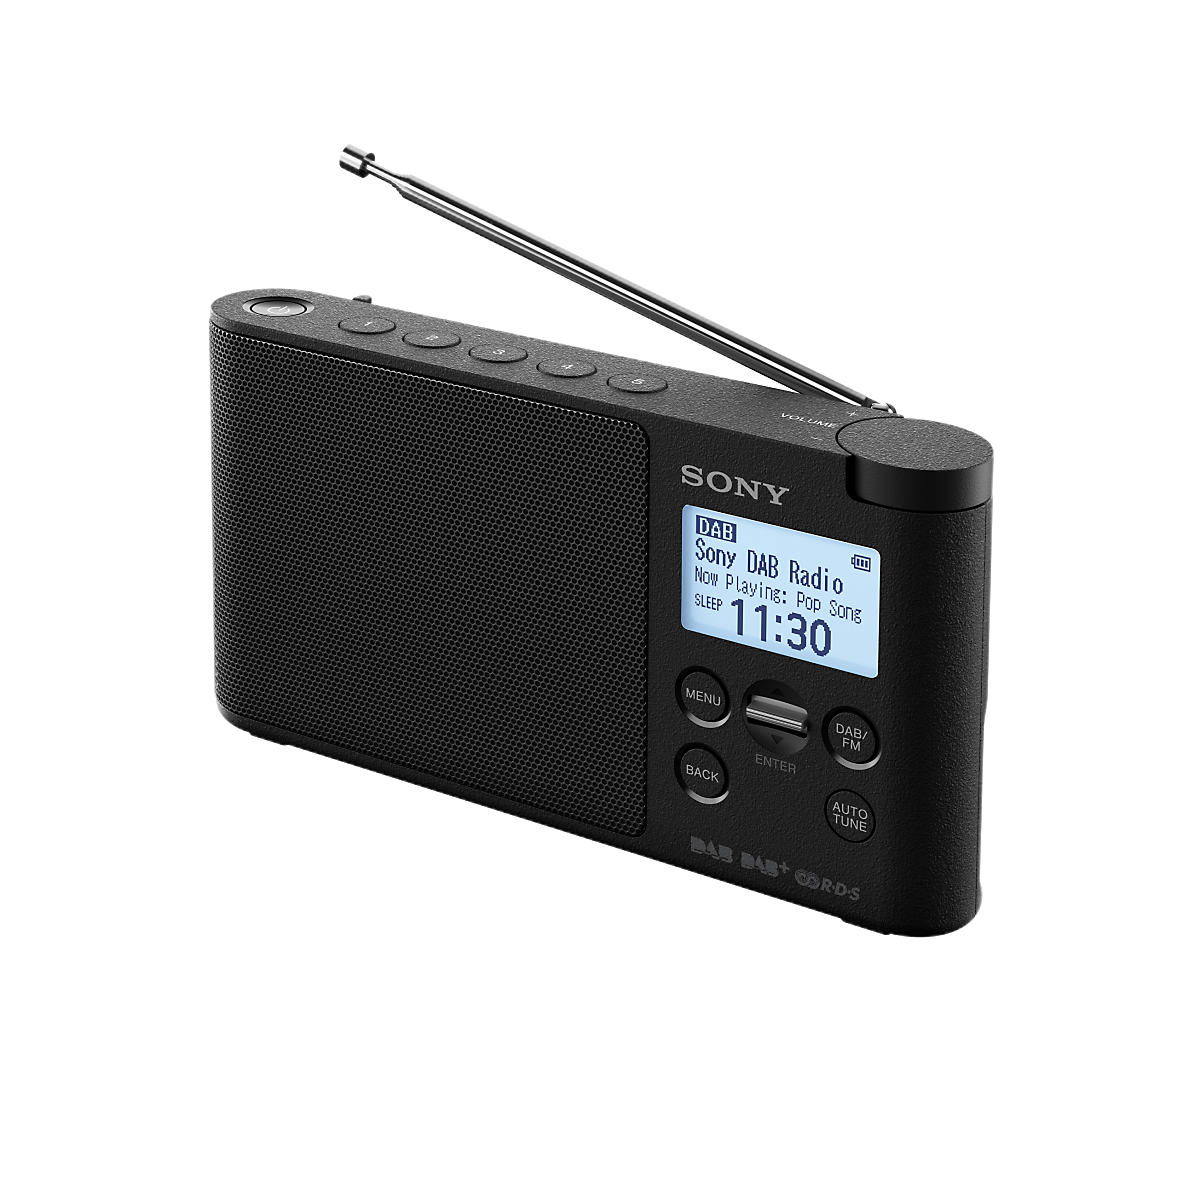 Uređaji Boombox i radio-uređaji te prijenosni uređaji za reprodukciju CD-a